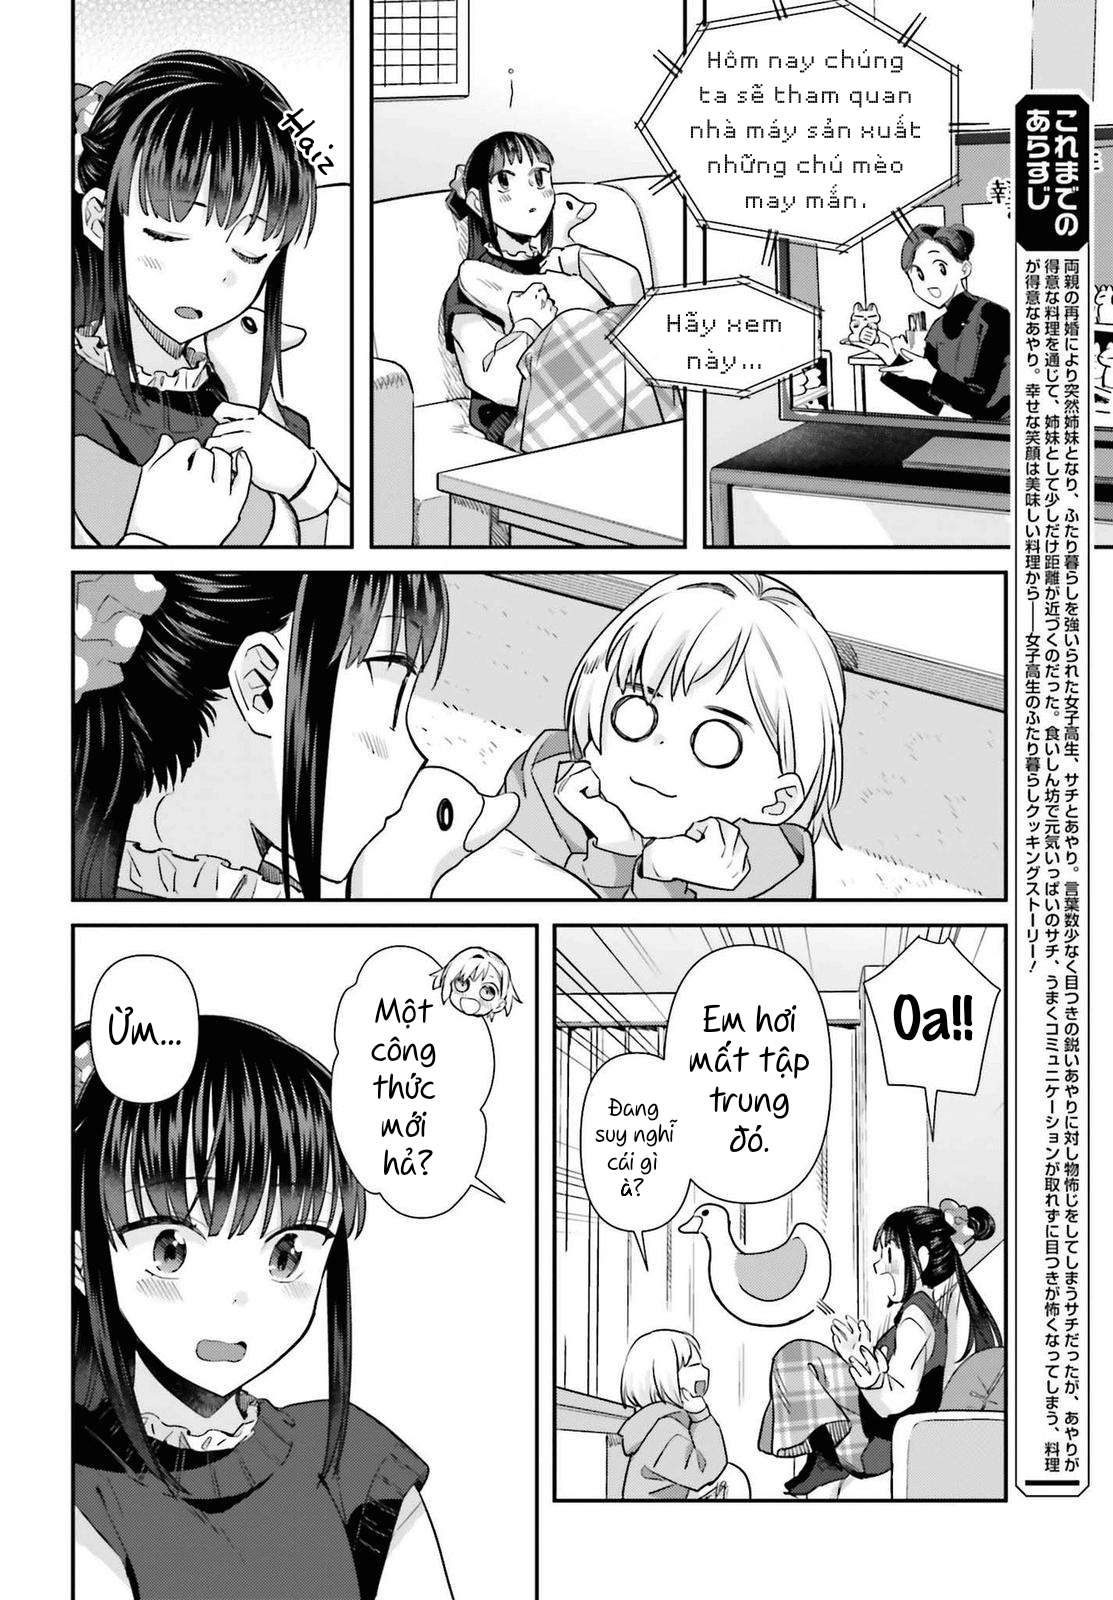 Shinmai Shimai No Futari Gohan (Manga Island) Chapter 58 - Trang 5